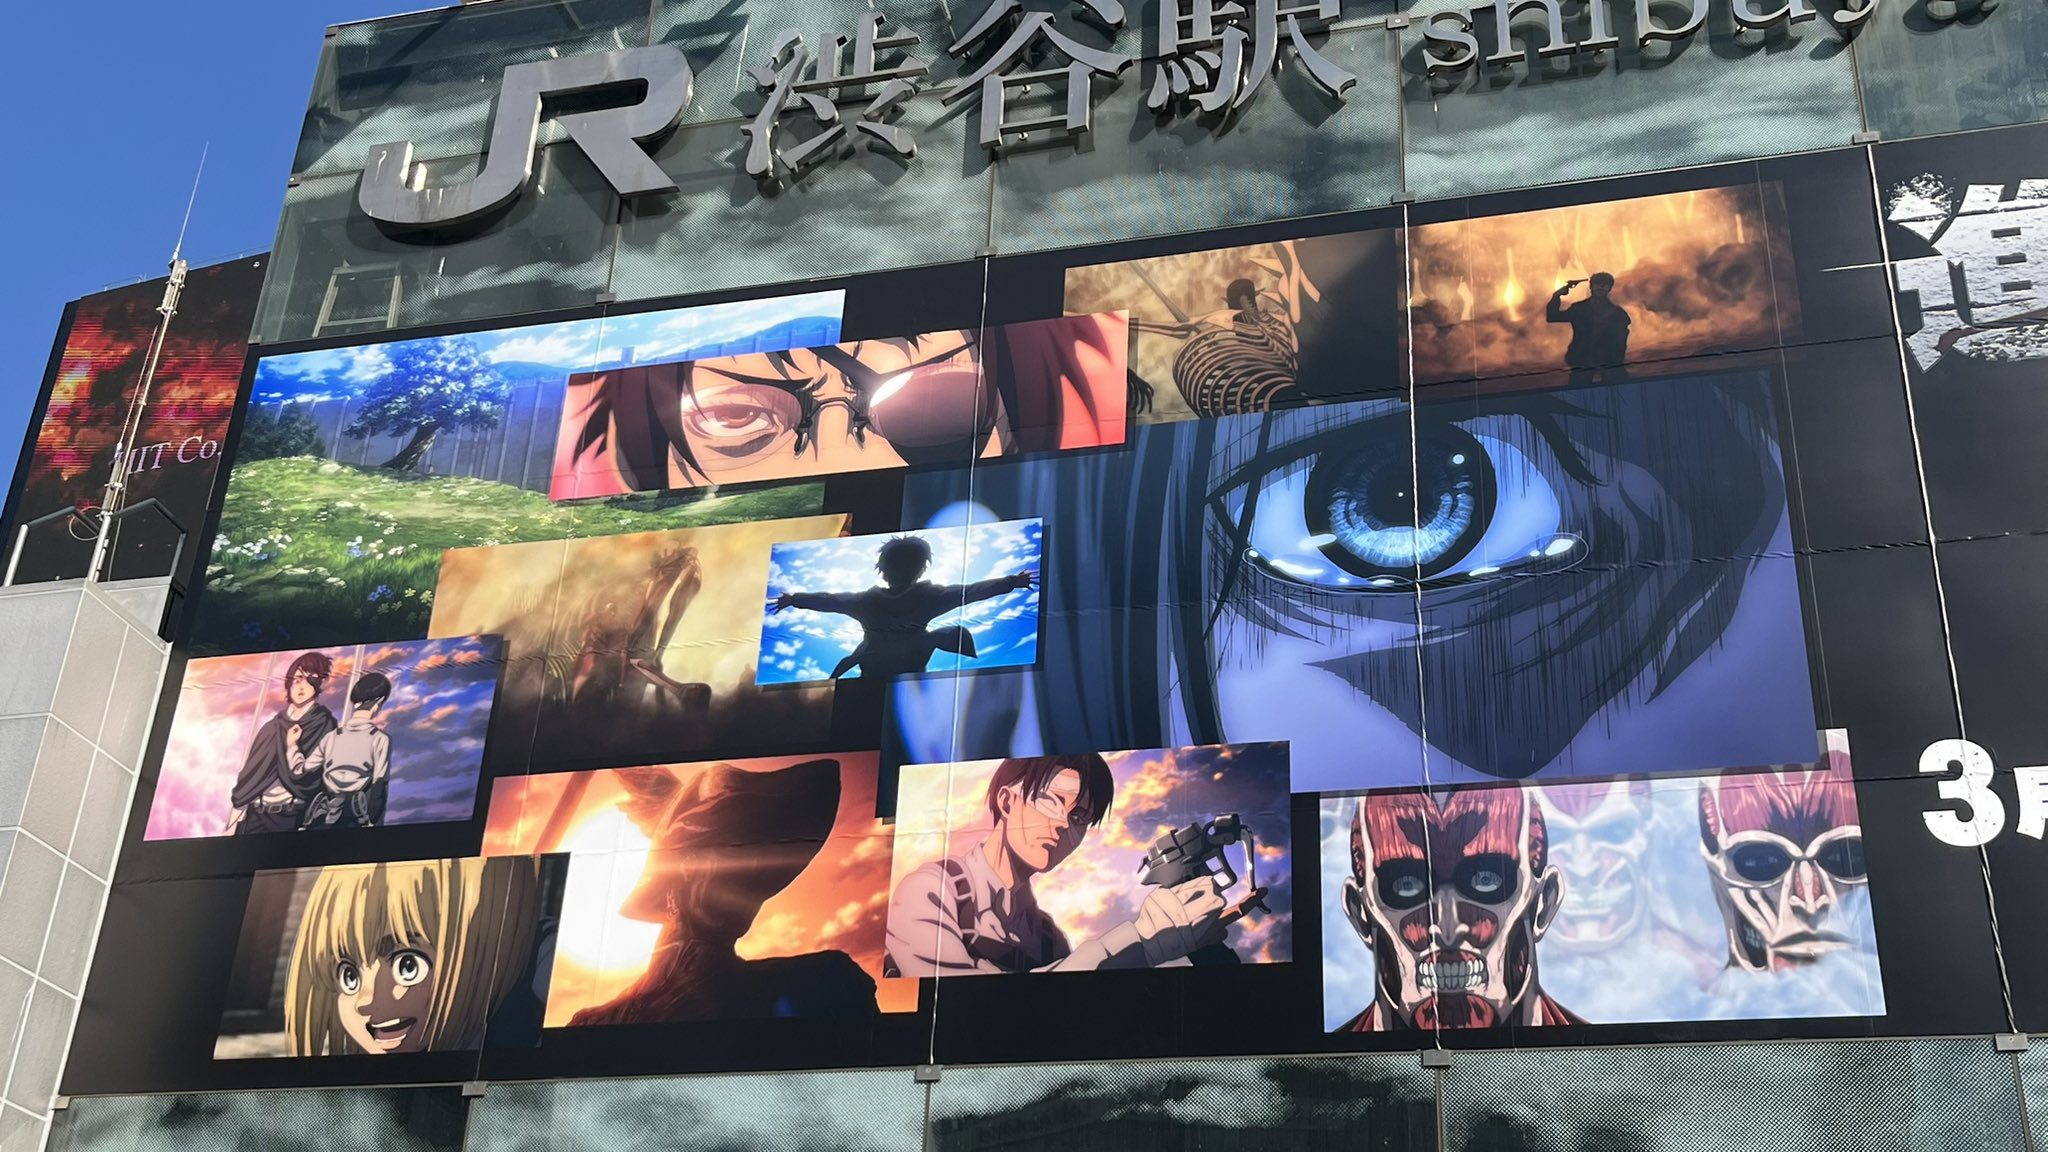 L'Attaque des Titans envahit Shibuya : L'affiche de la saison finale - Partie 3 6 FpZa8UDWcAAiWVI